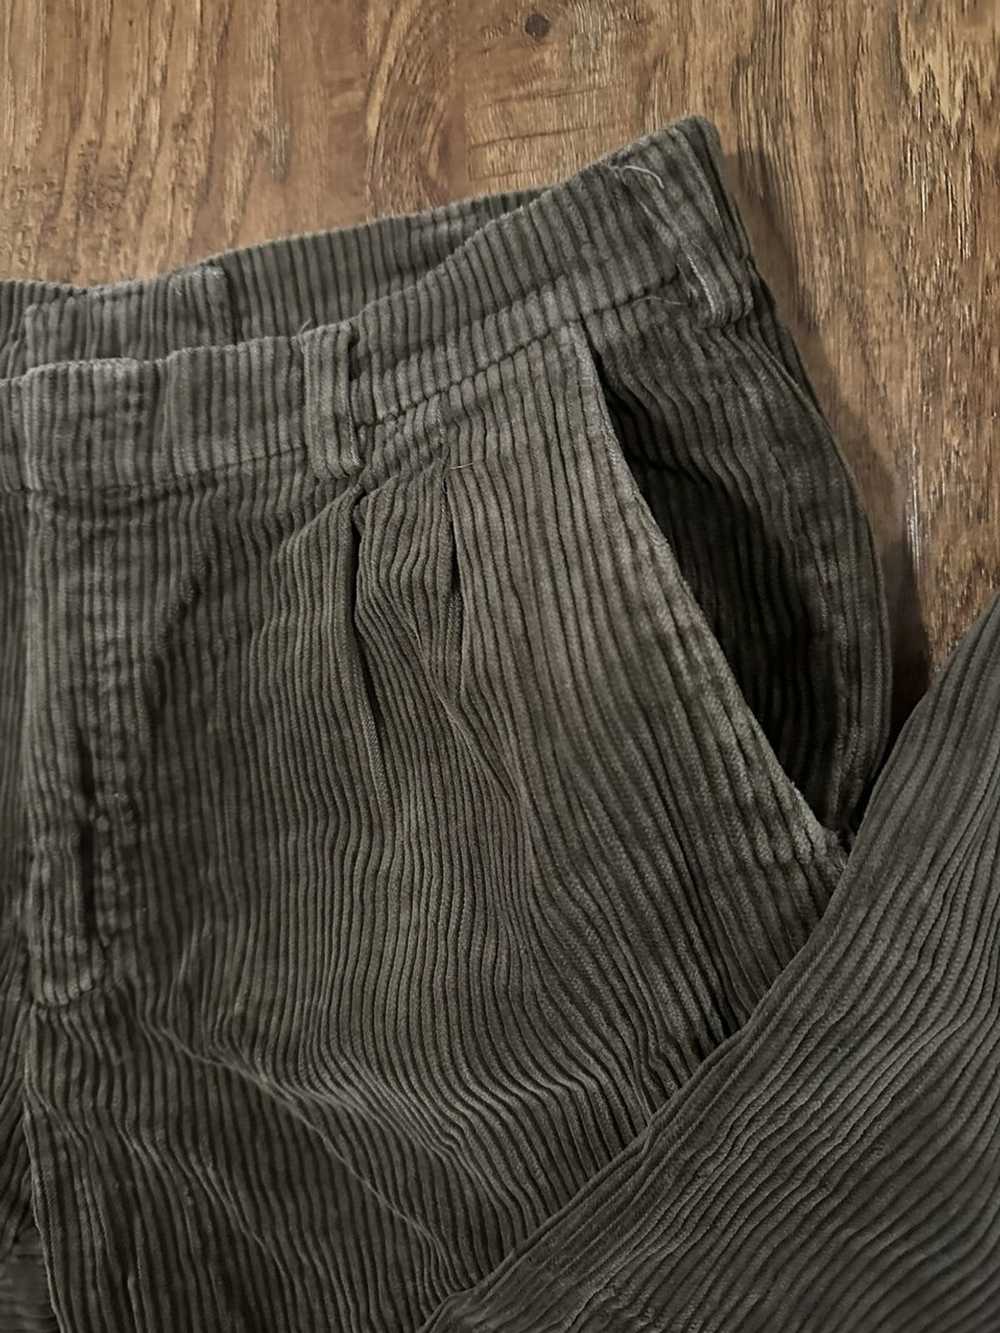 Vintage Brown Corduroy Pants - image 2